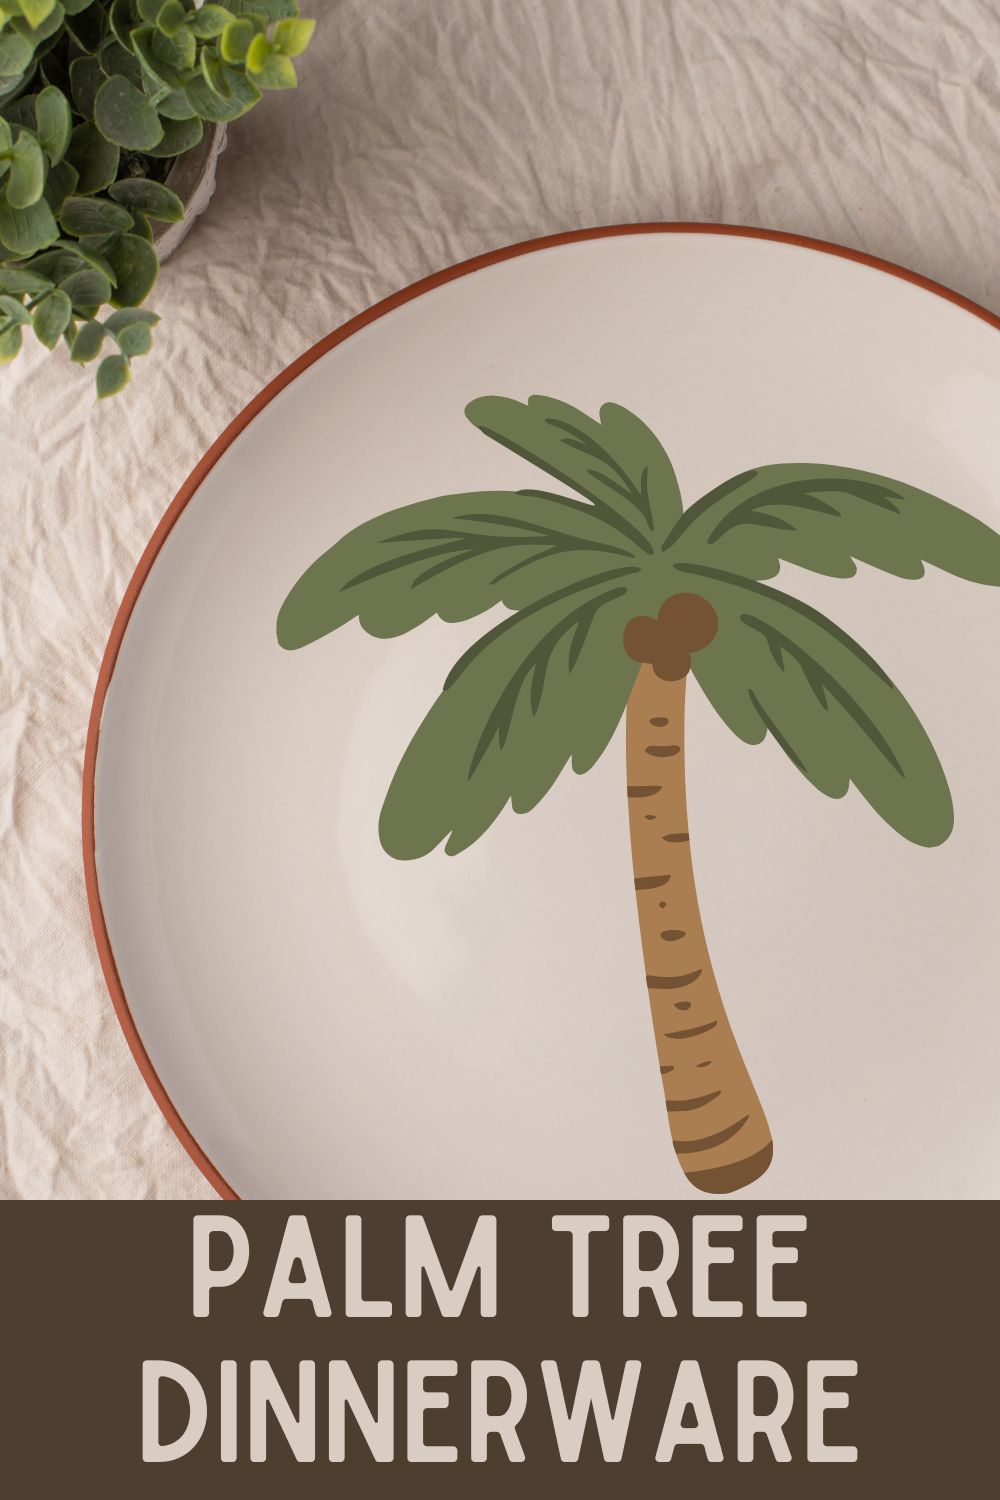 Palm tree dinnerware.